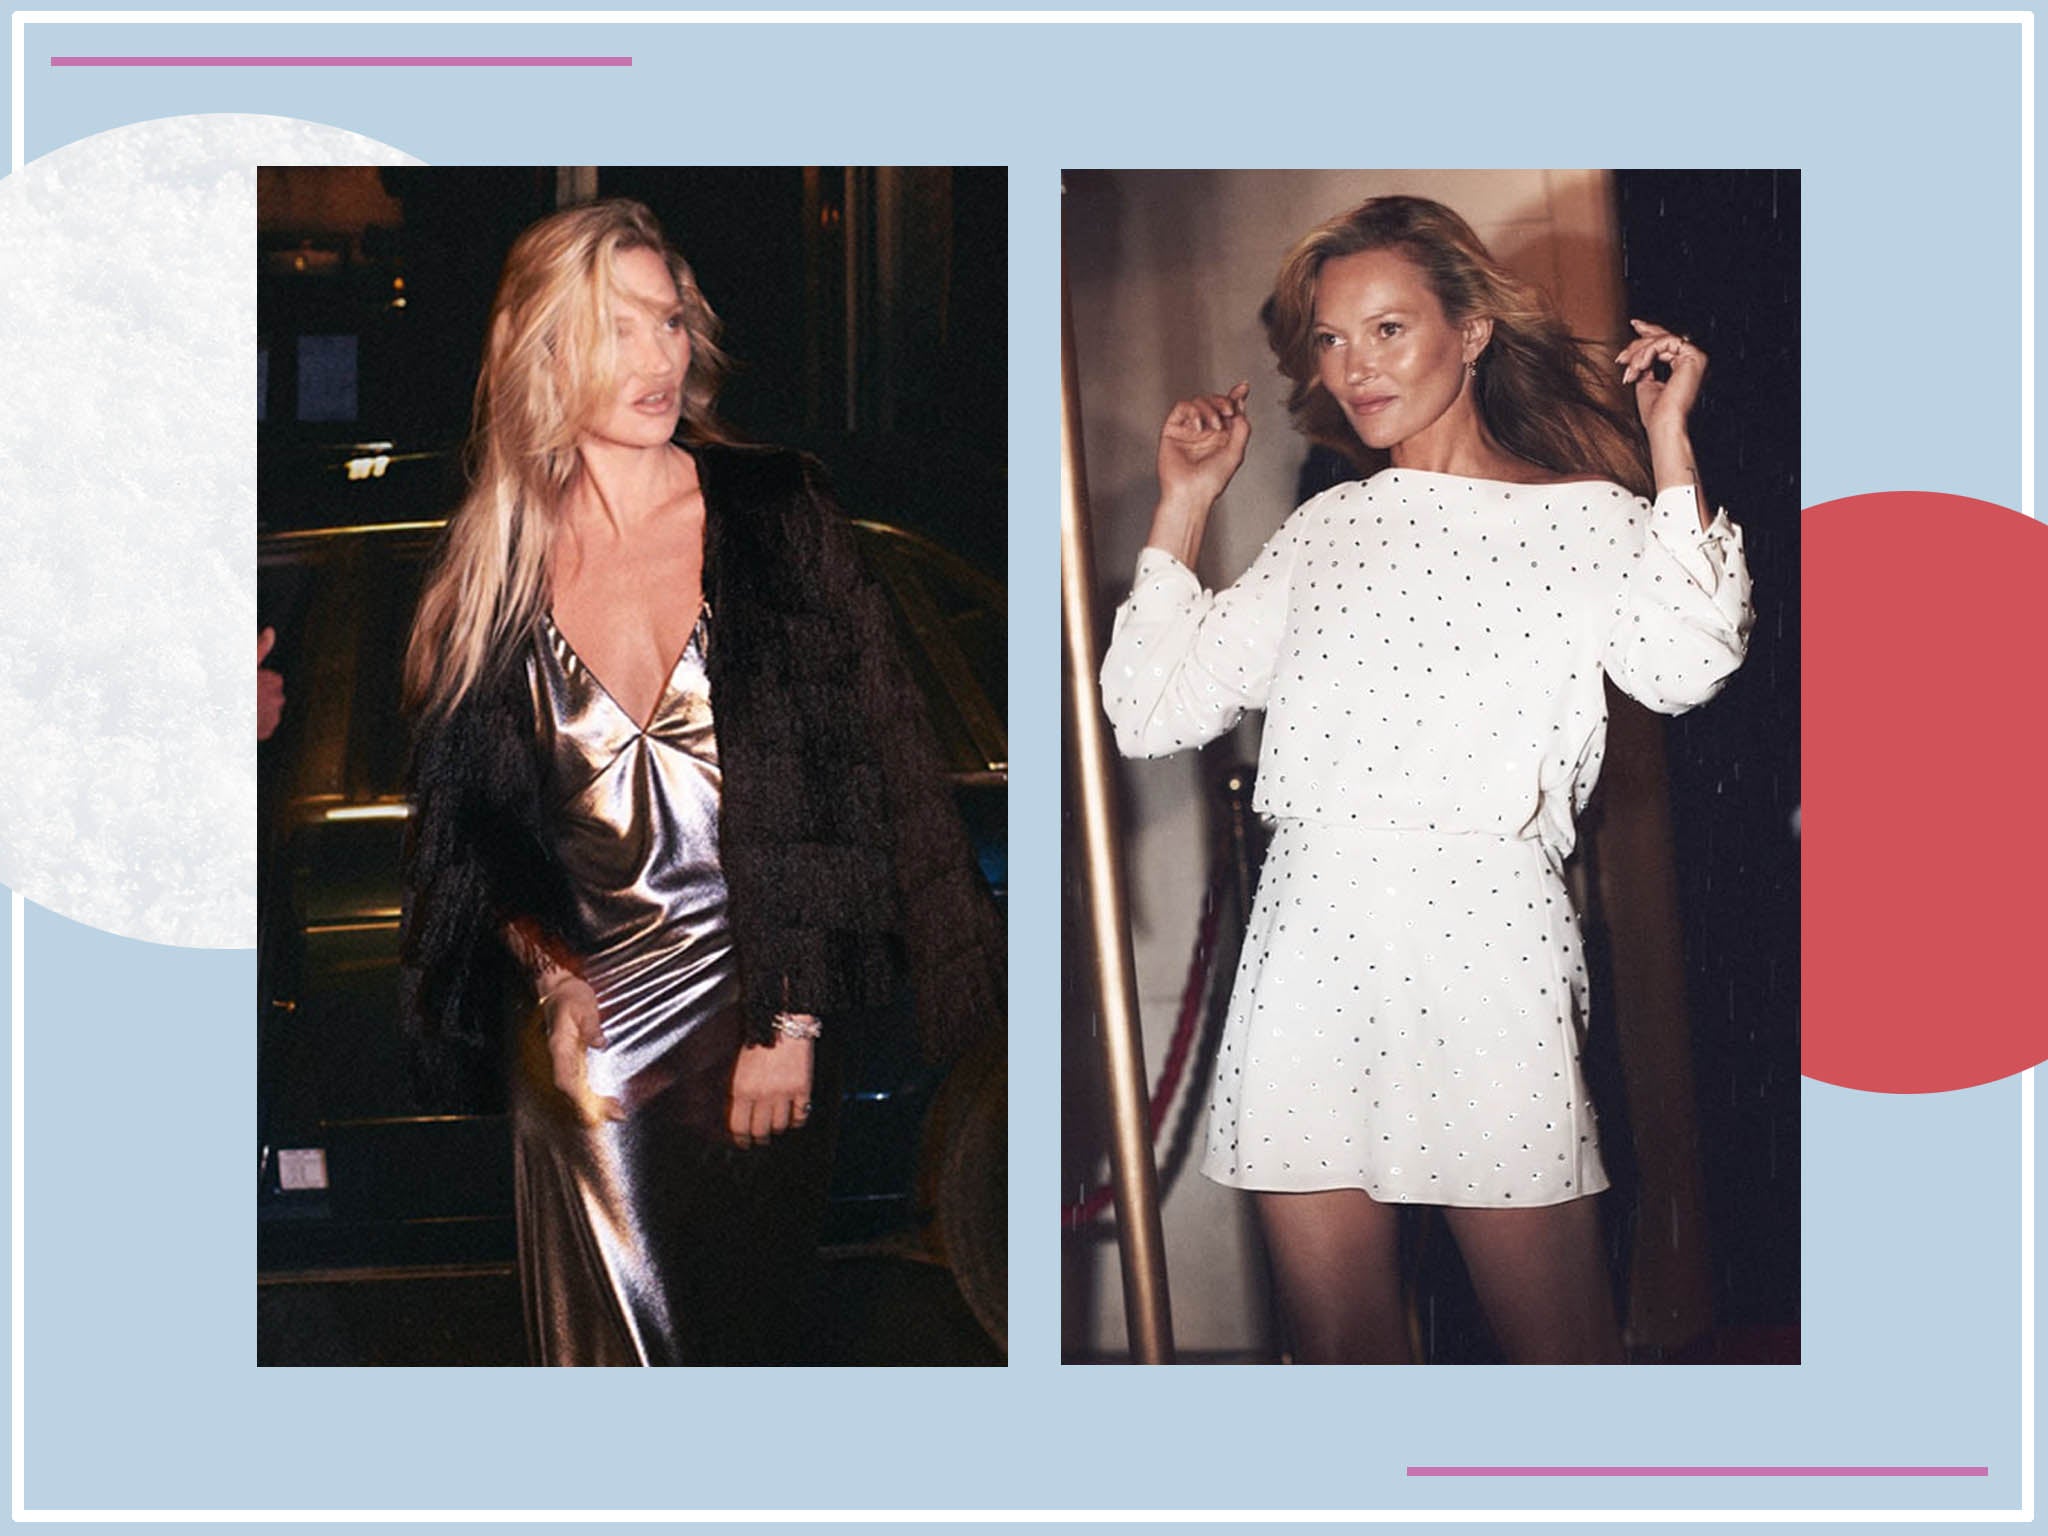 Kate Moss is the face of Zara's Nineties-inspired capsule range of